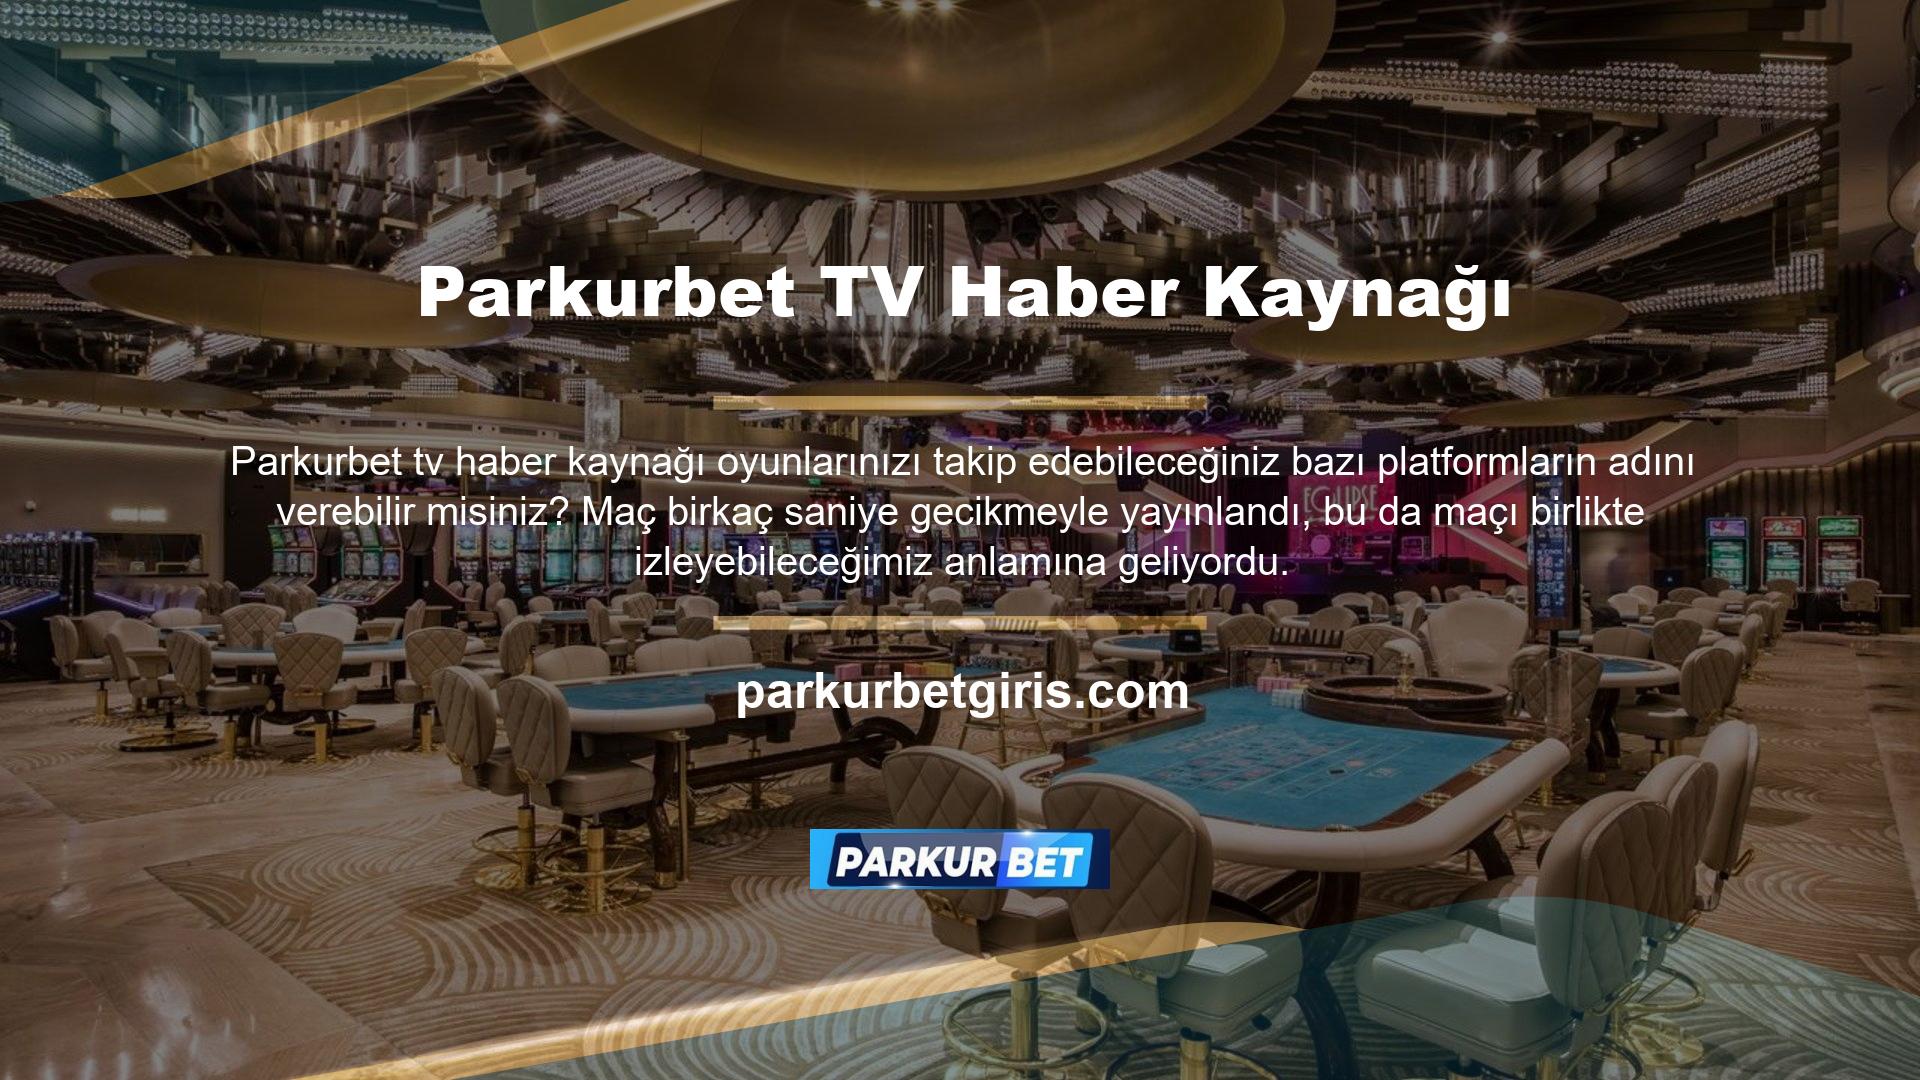 Türkçe konuşanlar için resmi siteden detaylı bilgiye ulaşmanın en hızlı yolu bu içeriğin paylaşılmasıdır